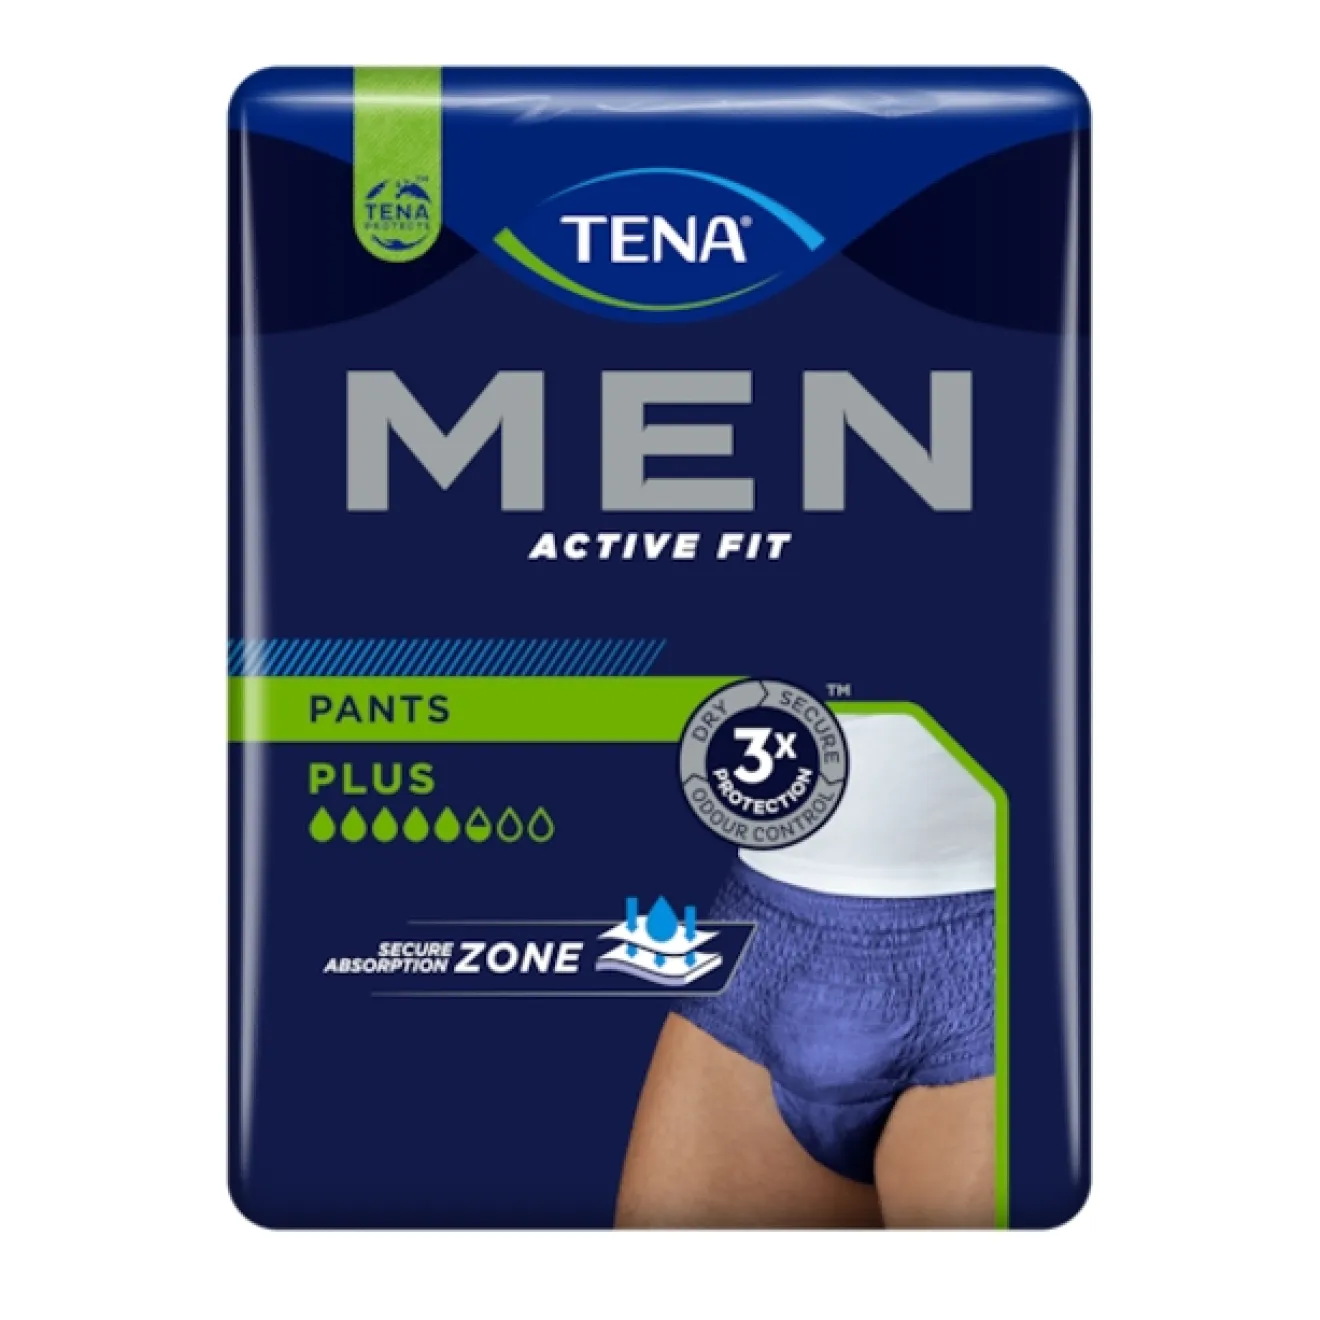 TENA MEN Active Fit Inkontinenz Pants plus L/XL blau 4x10 ST